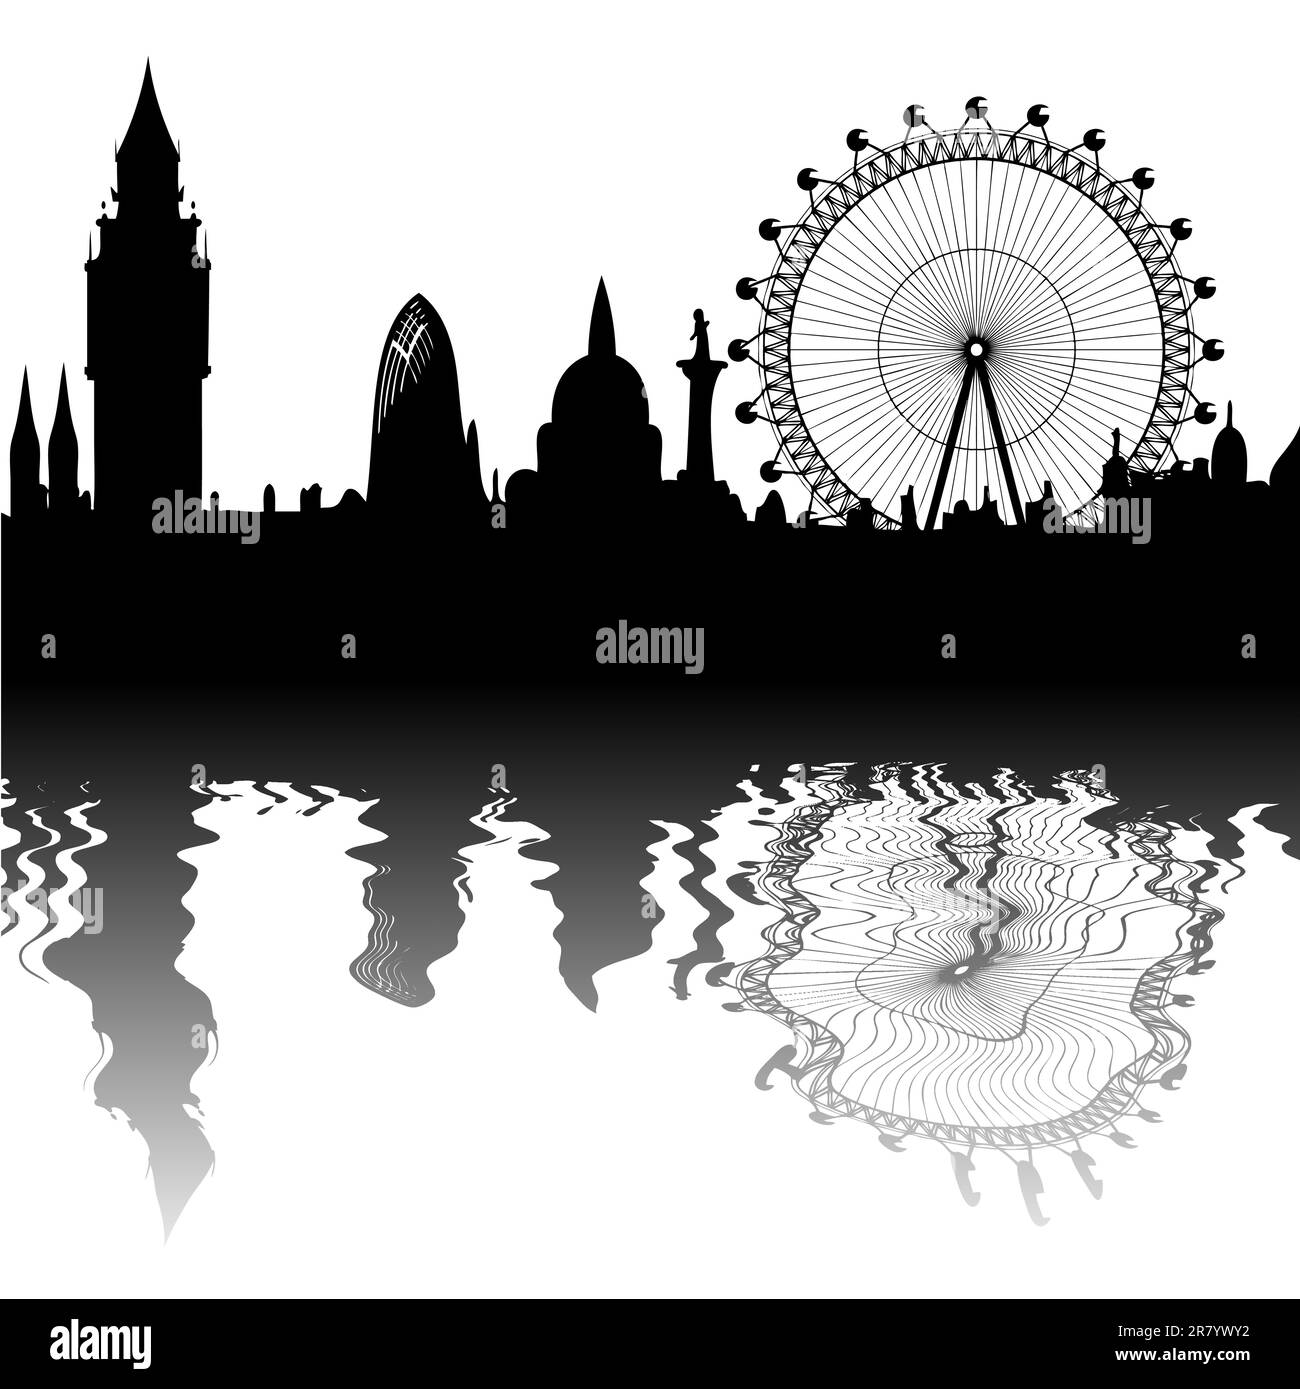 Bild des Panoramas von London - Big Ben, Big Wheel - Spiegelung. Diese Datei ist ein Vektor und kann ohne Qualitätsverlust auf jede Größe skaliert werden. Stock Vektor